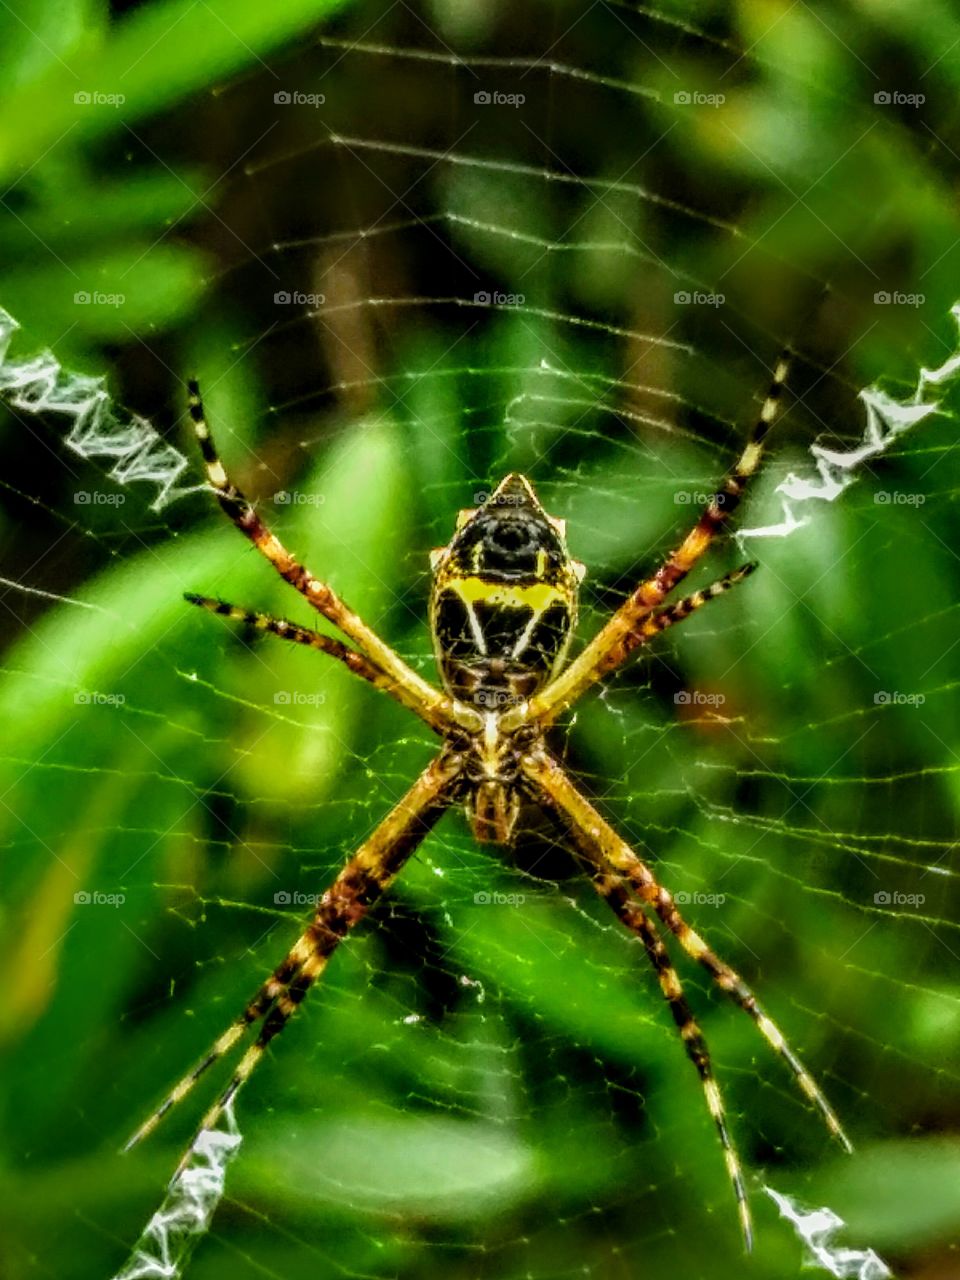 spider web in my garden